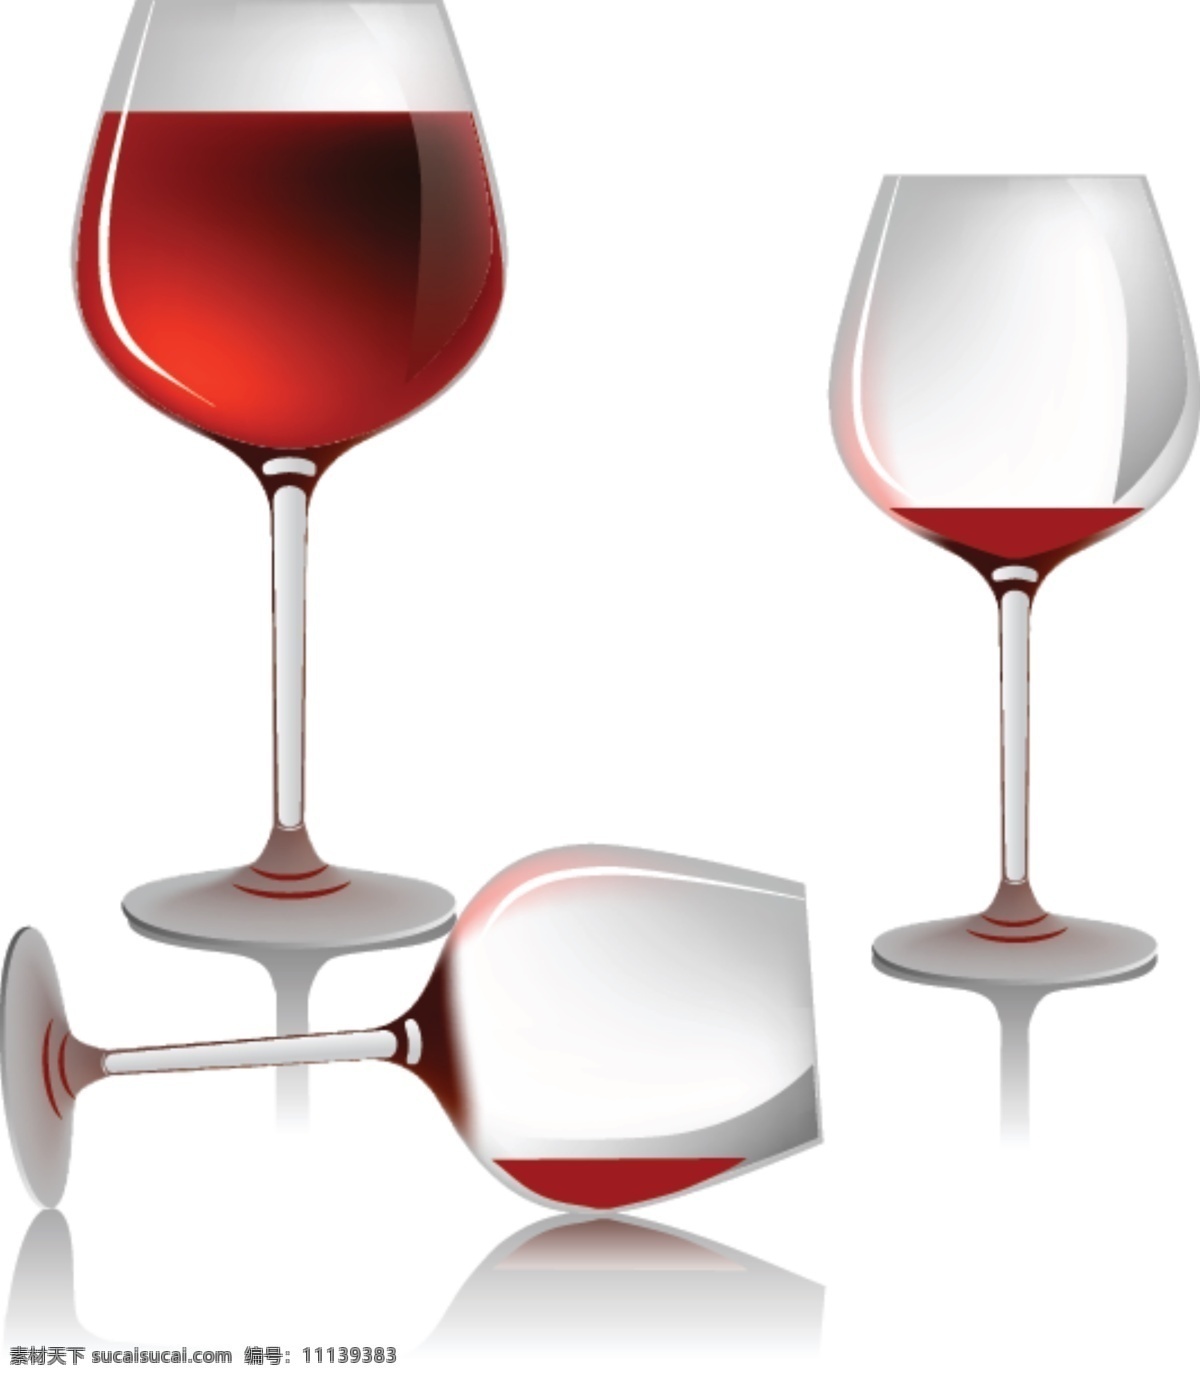 超现实的玻璃 玻璃 红葡萄酒 酒 葡萄酒杯 矢量食物 透明 香槟 饮料 手绘逼真 栩栩如生 方 矢量图 日常生活